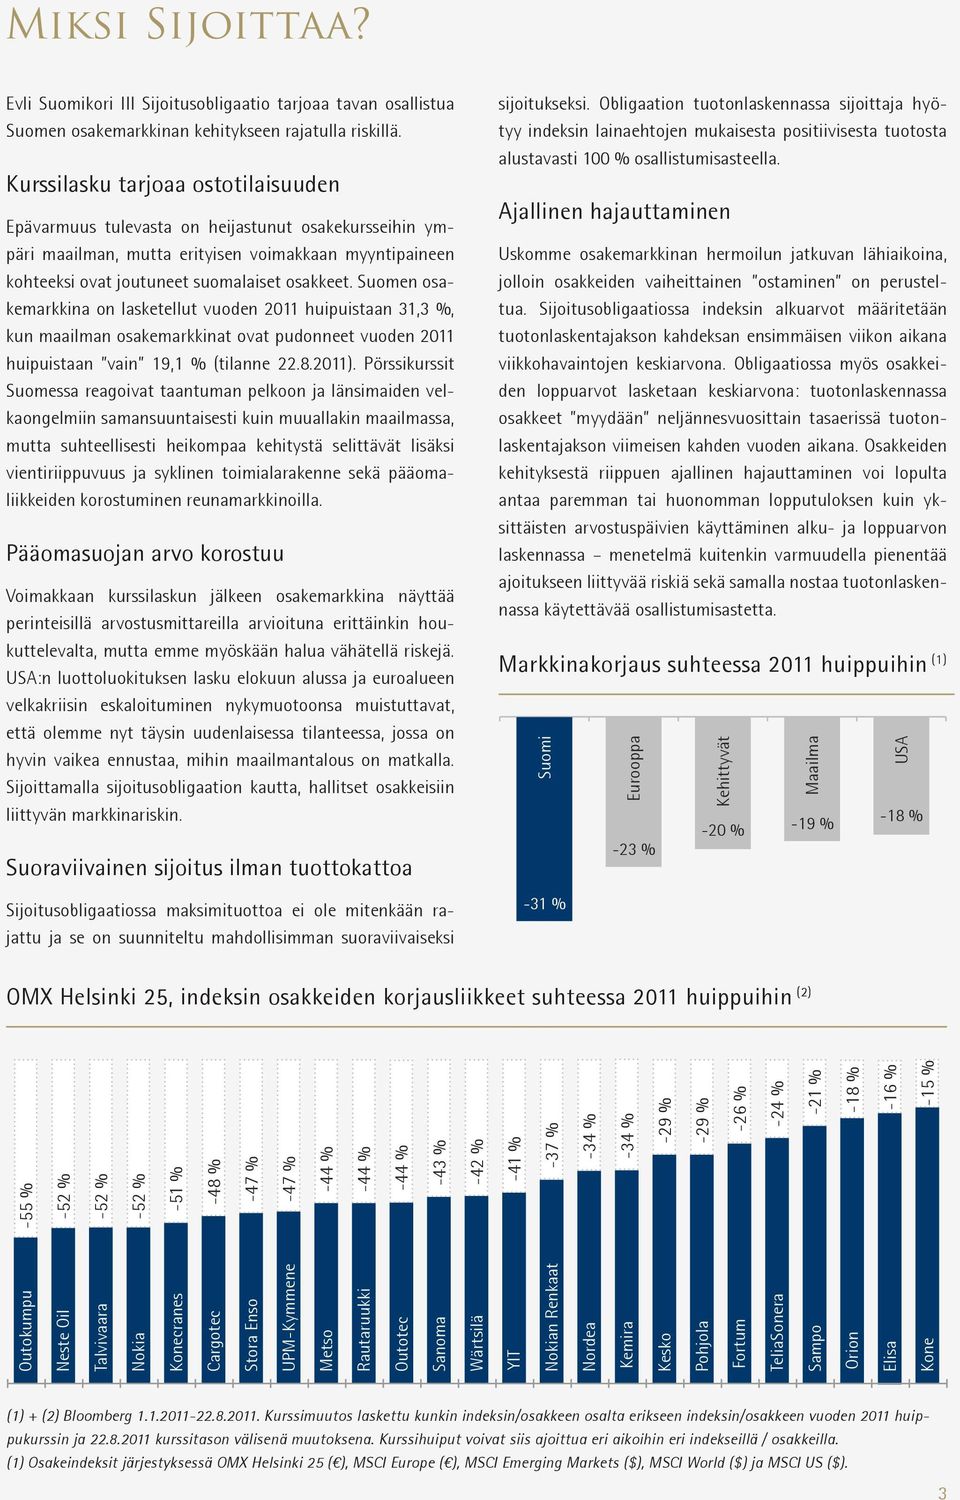 Suomen osakemarkkina on lasketellut vuoden 2011 huipuistaan 31,3 %, kun maailman osakemarkkinat ovat pudonneet vuoden 2011 huipuistaan vain 19,1 % (tilanne 22.8.2011).